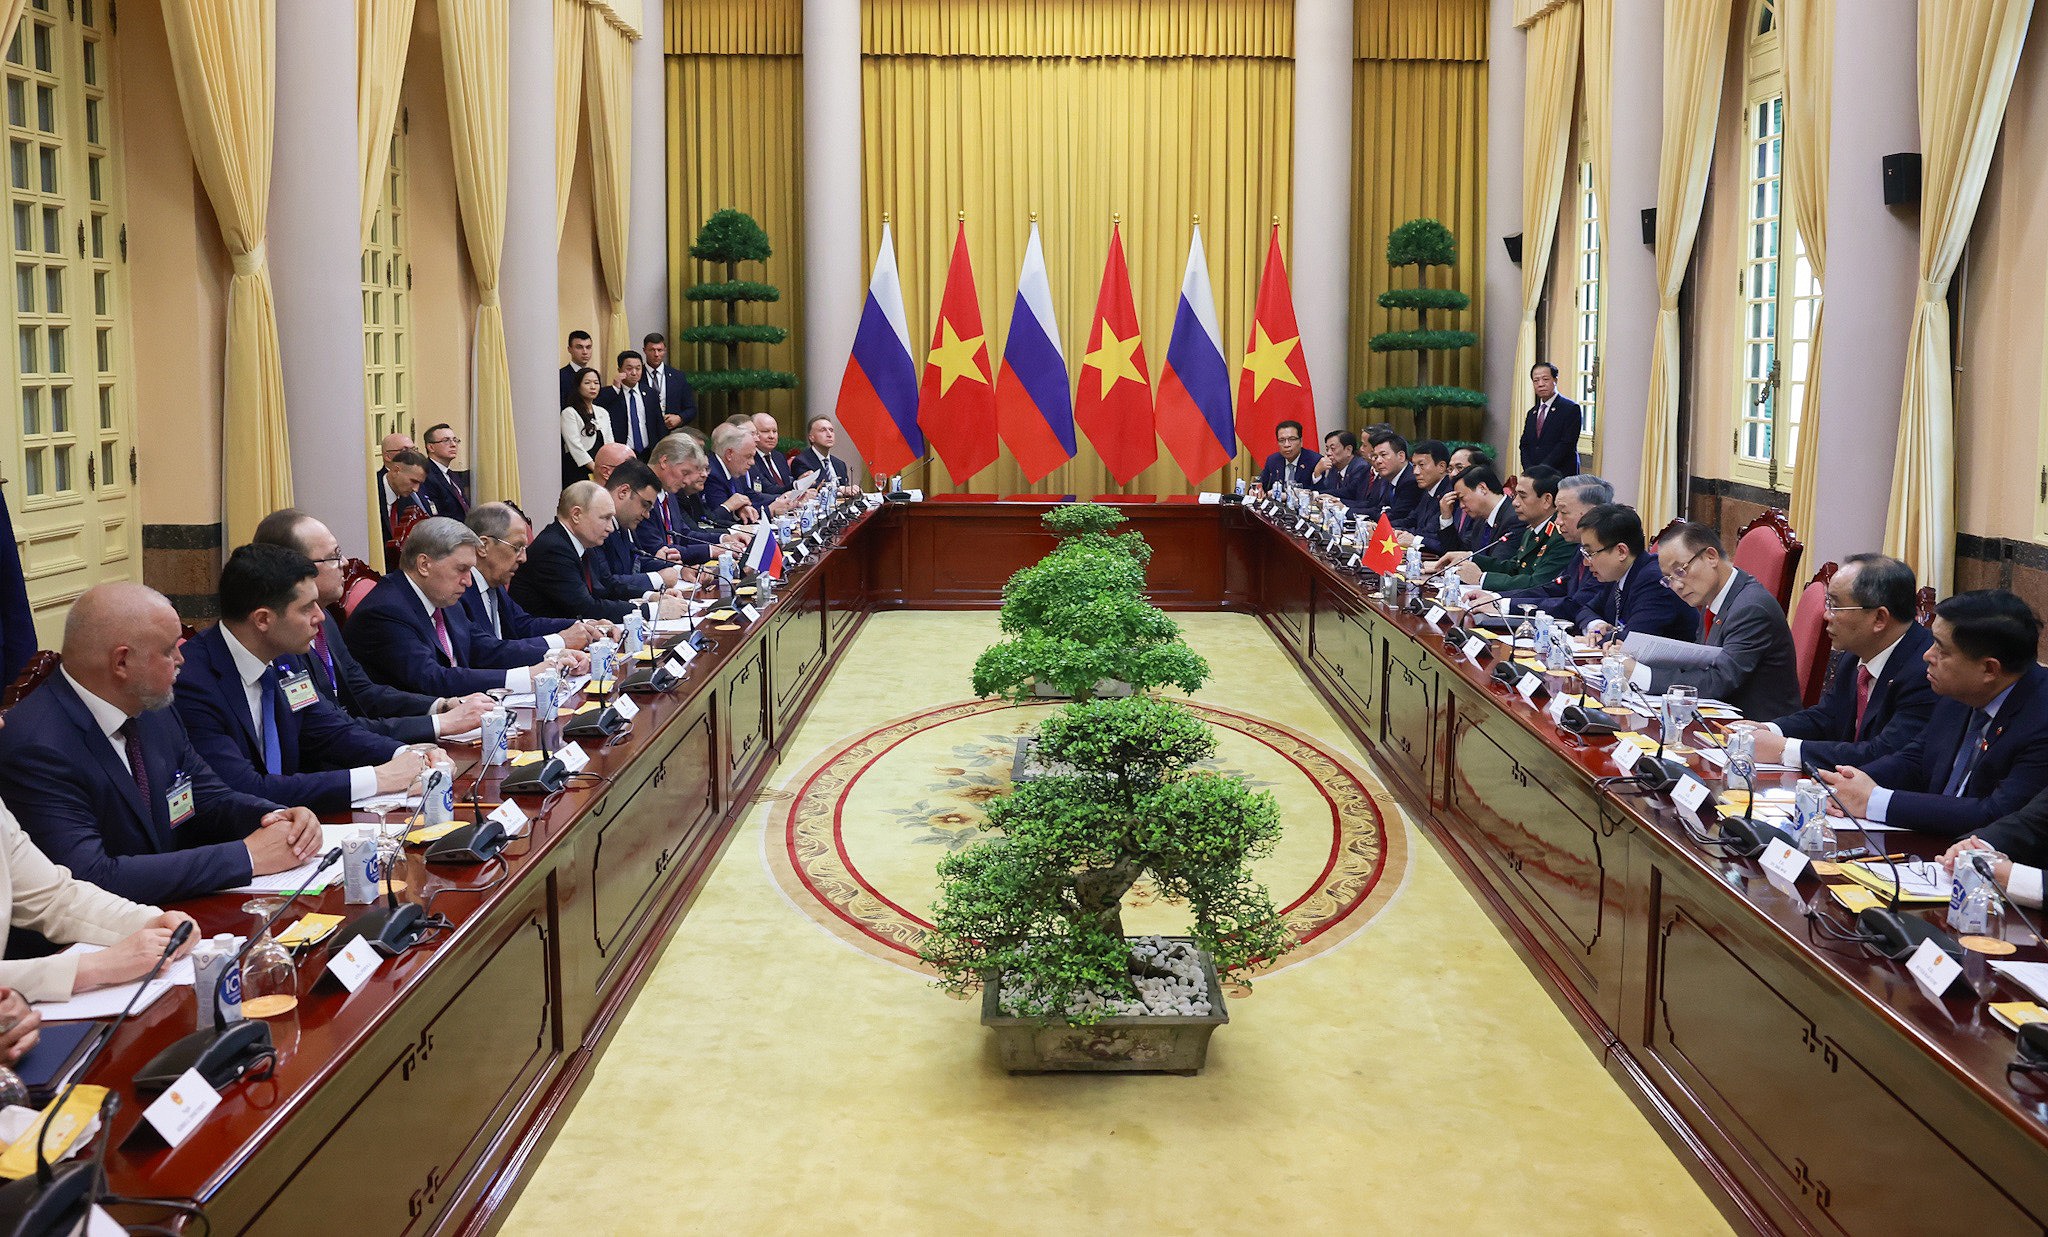 22 giờ bận rộn của Tổng thống Putin trong chuyến thăm Việt Nam - 7